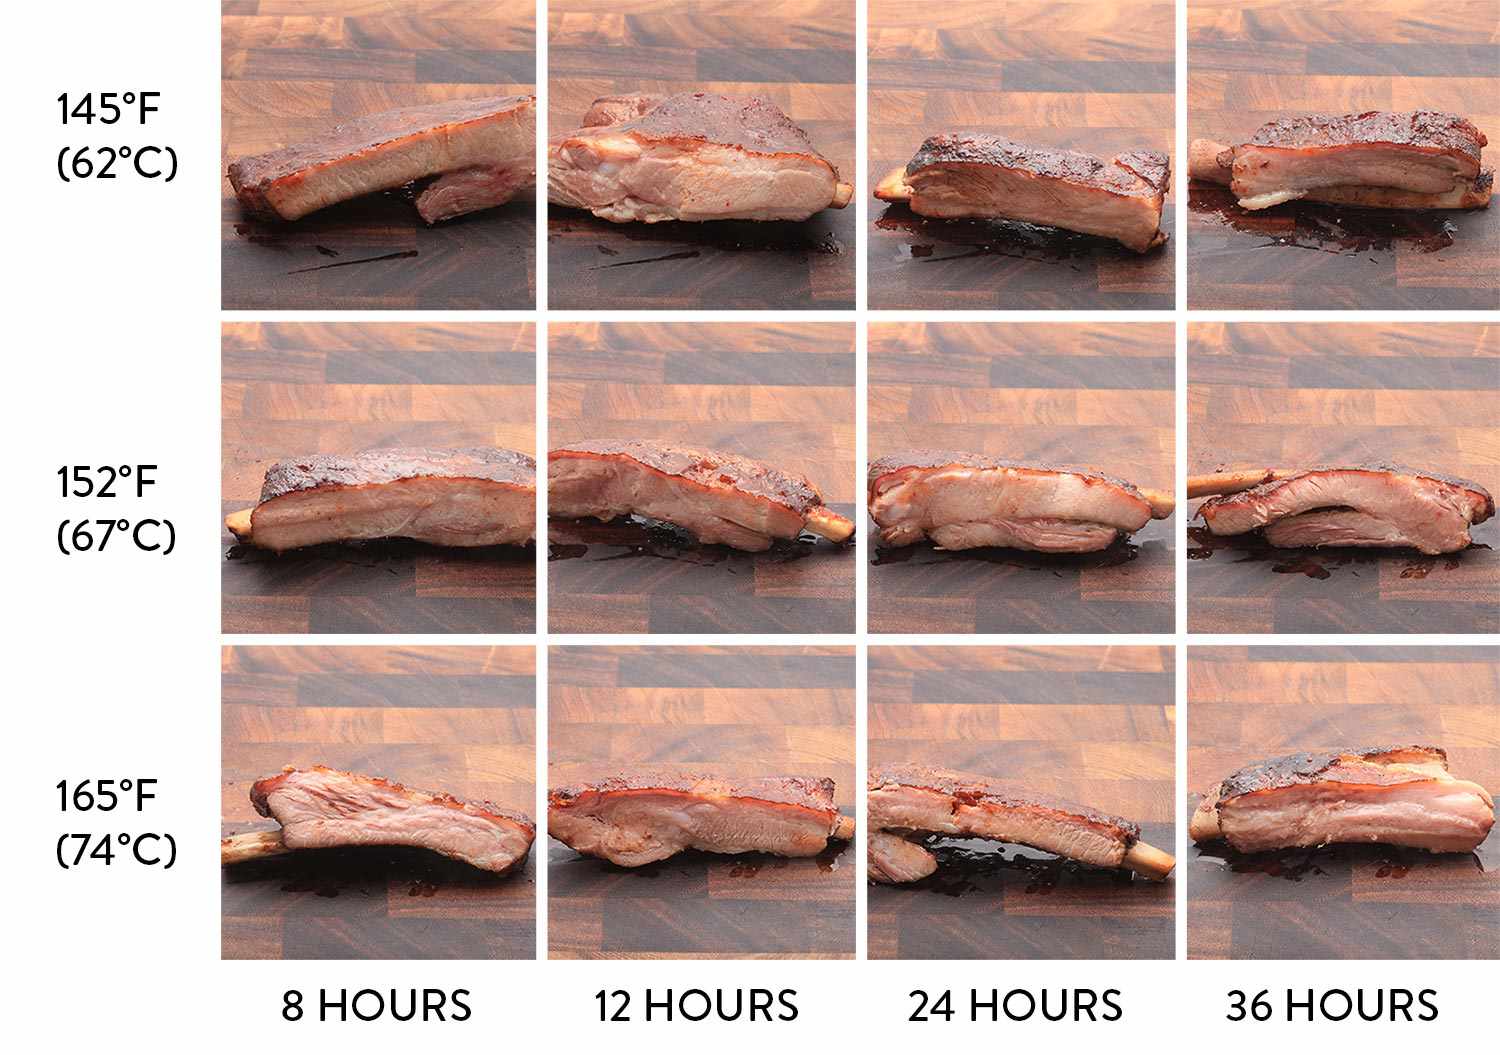 肉肉显示，在烤锅里有很多热片的温度，而你的肋骨上有很多东西